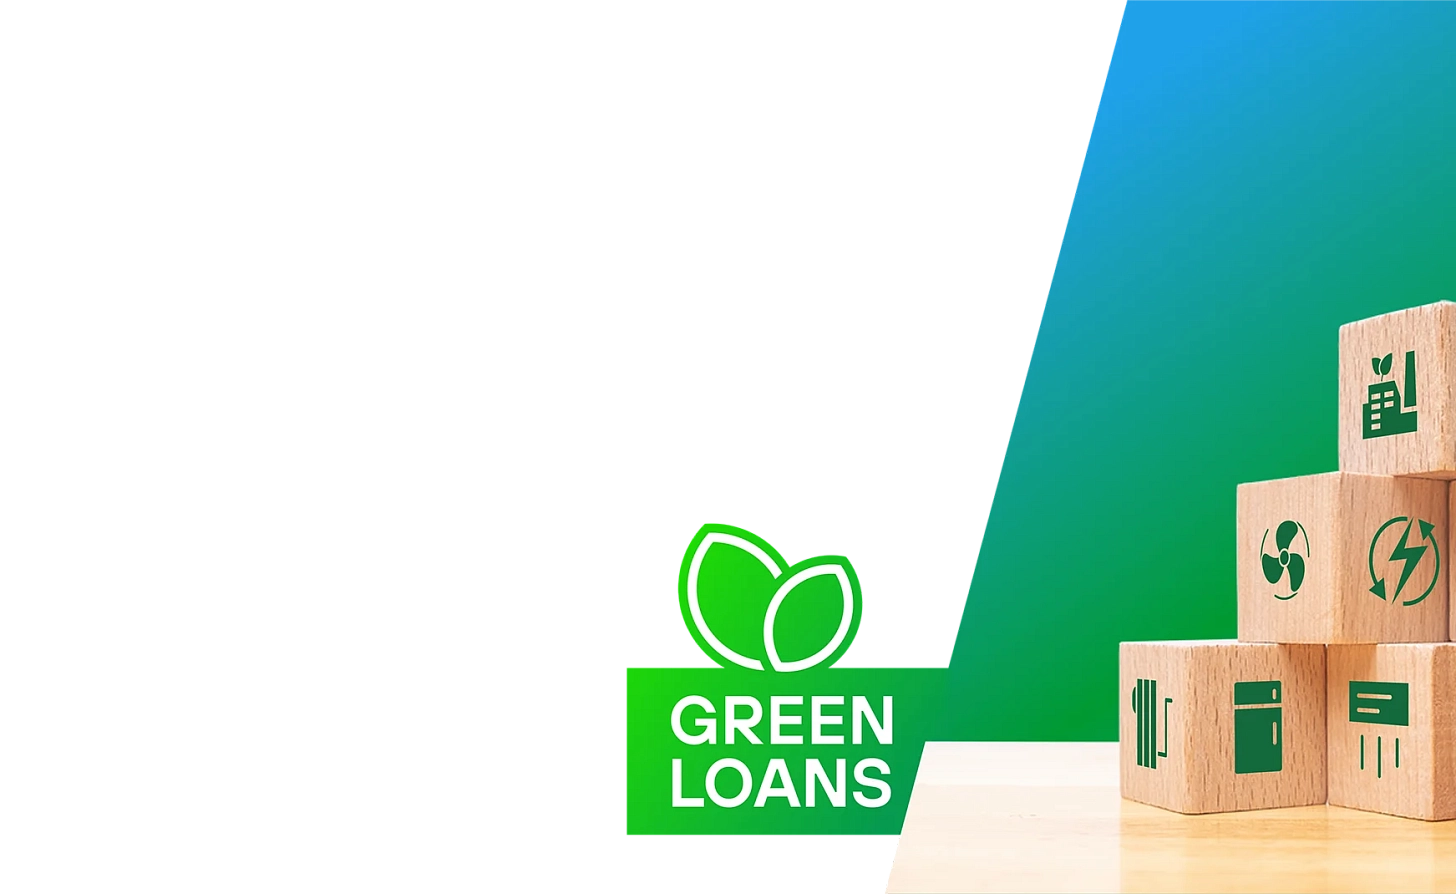 Потребительский и Бизнес кредит «Зеленый Кредит KYRSEFF»